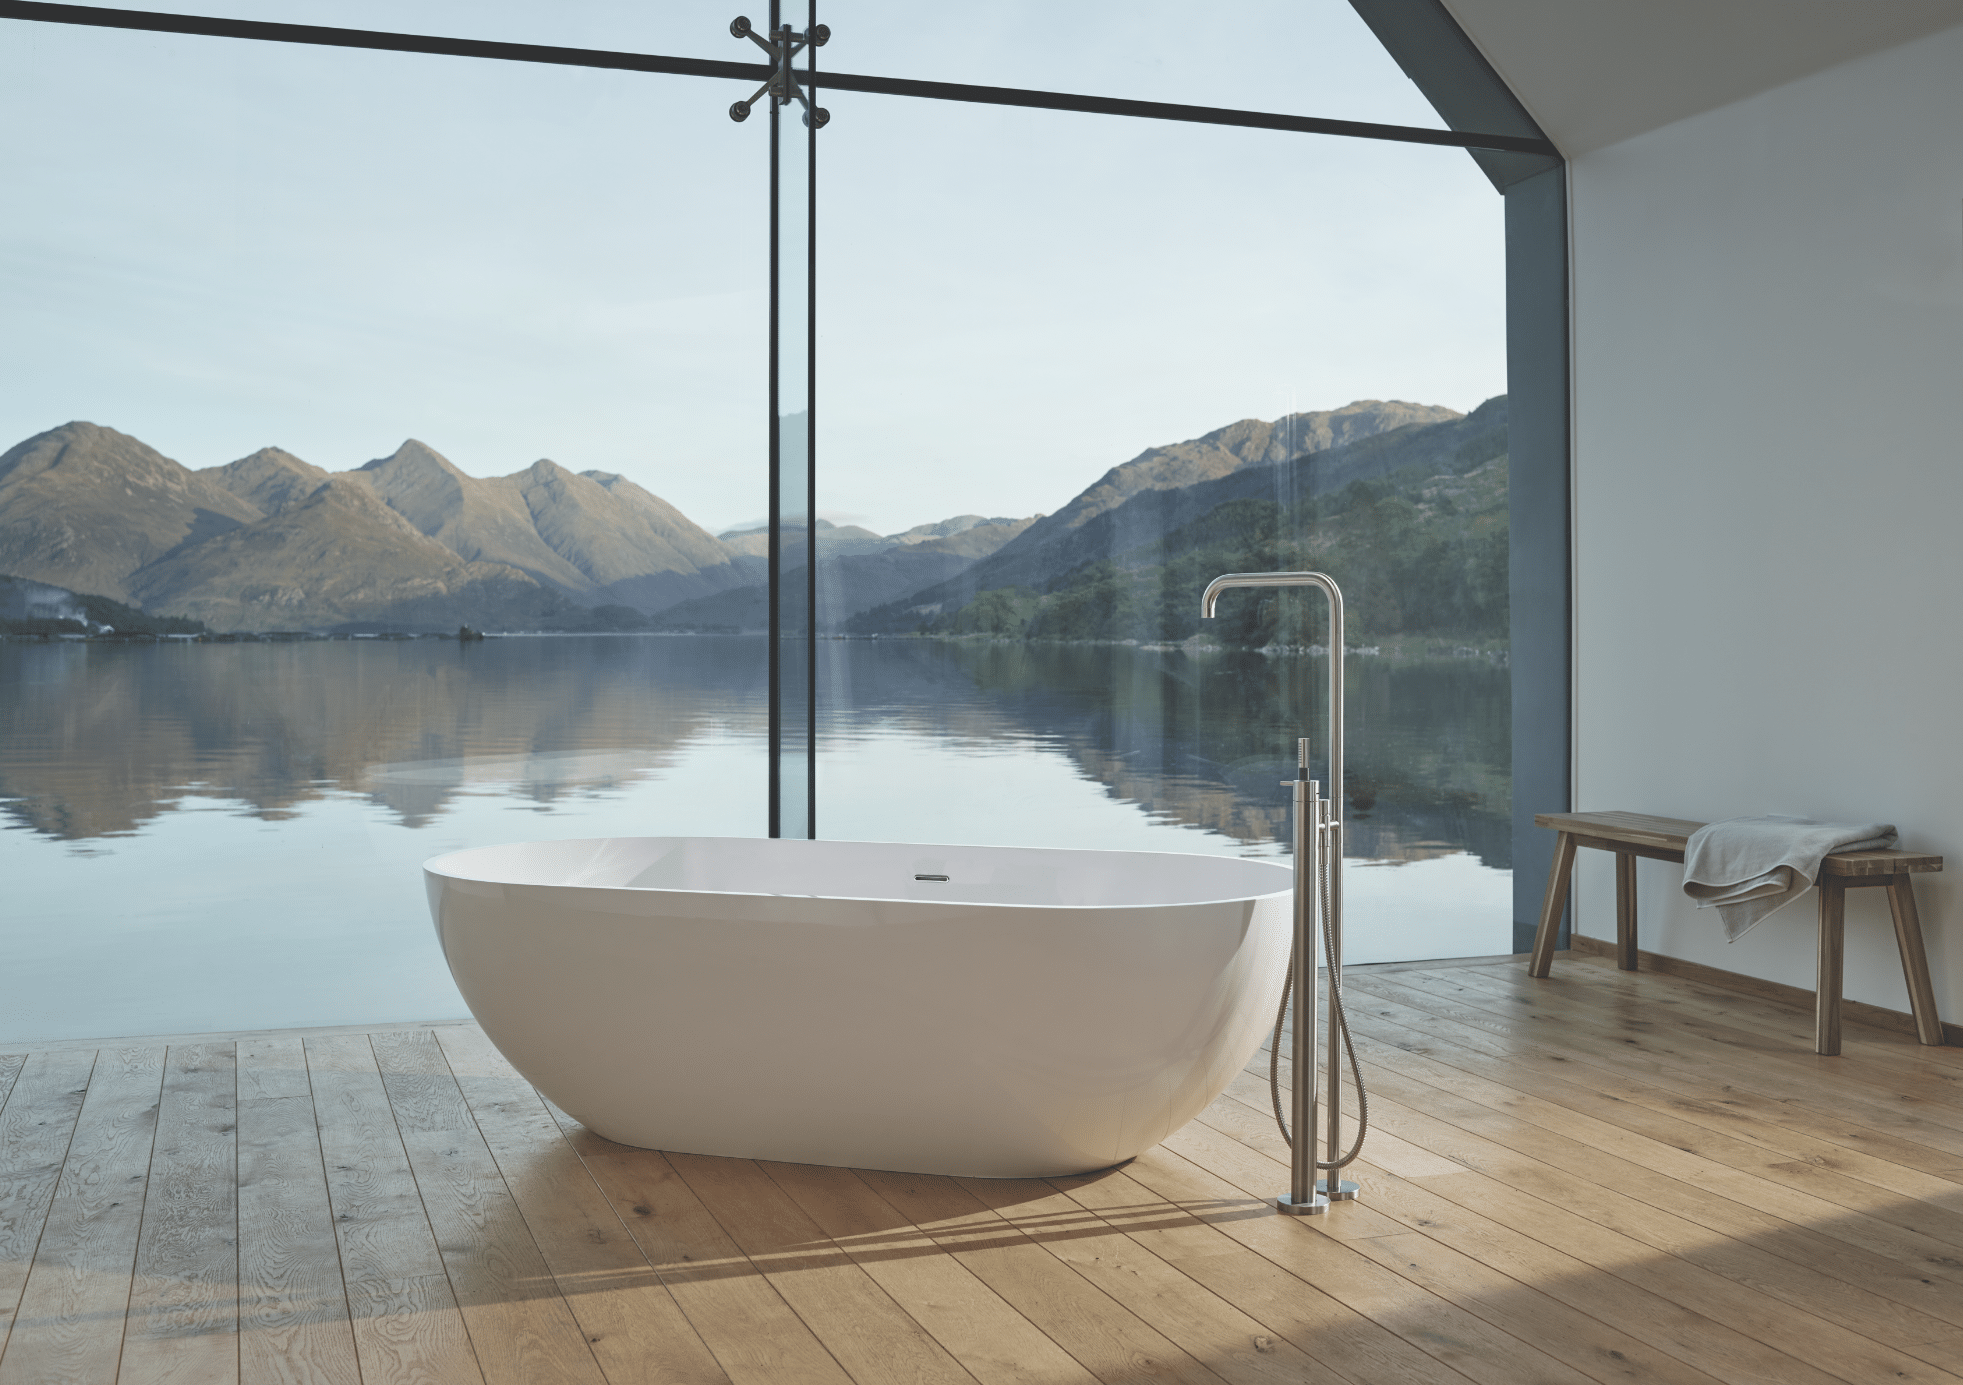 VOLA zeigt ein Badezimmer mit Holzboden und einer weissen, freistehenden Badewanne mit silbernen Armaturen und großer Glasfront mit Blick auf einen See.